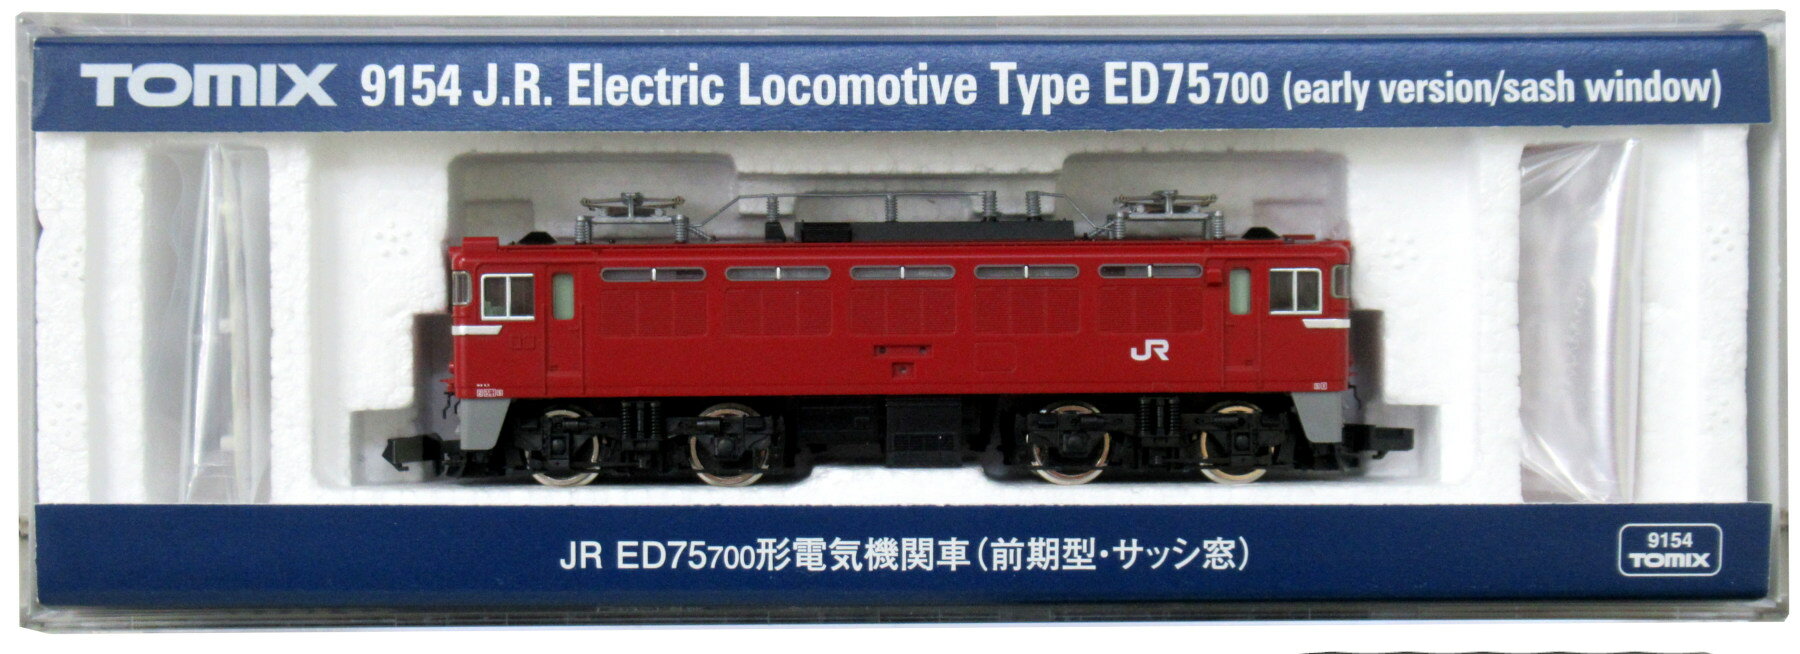 【中古】Nゲージ TOMIX(トミックス) 9154 JR ED75-700形 電気機関車 (前期型 サッシ窓) 【A】